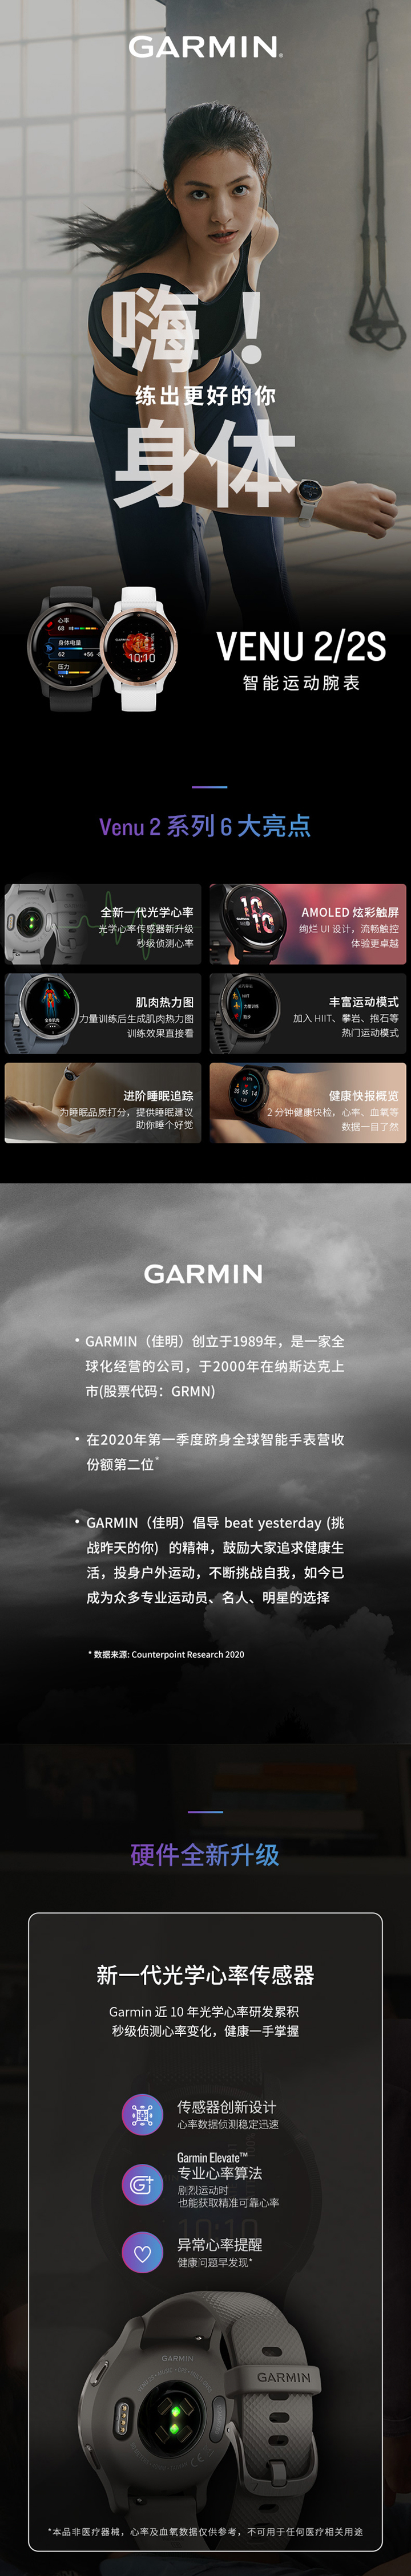 佳明Venu 2系列智能腕表免费试用,评测